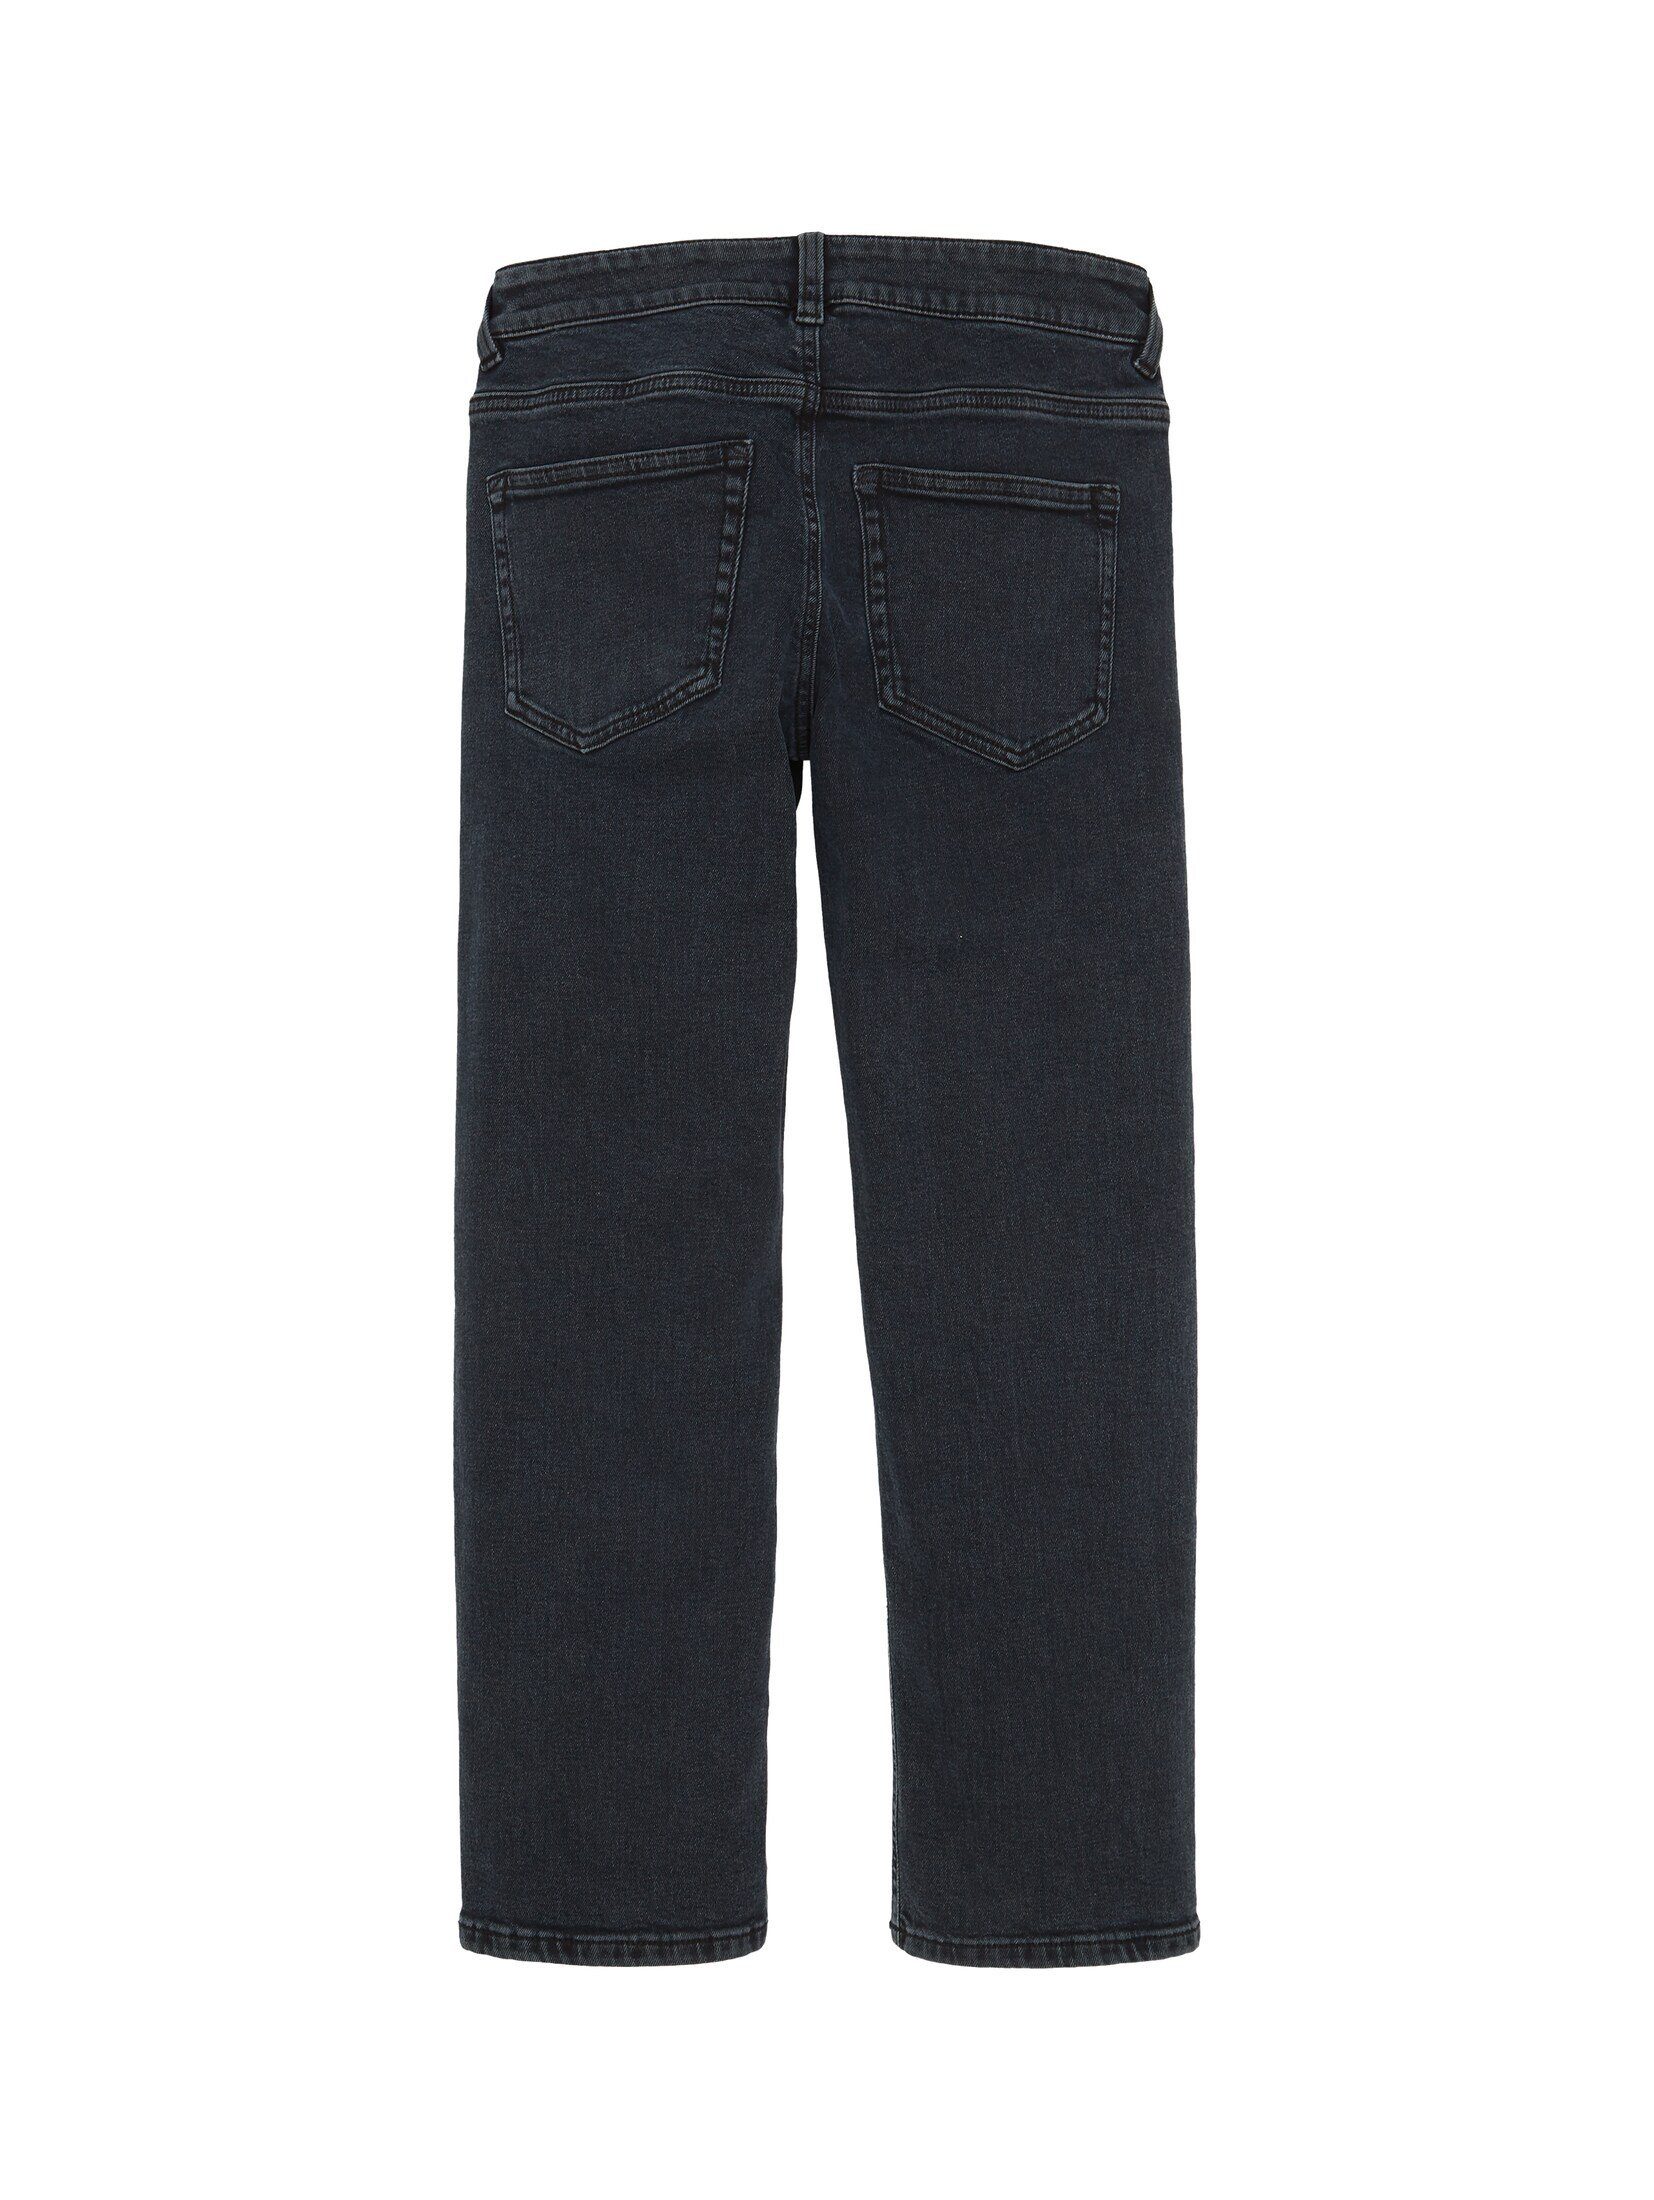 Bio-Baumwolle Jeans blue TAILOR TOM Jeans Straight black mit denim Gerade